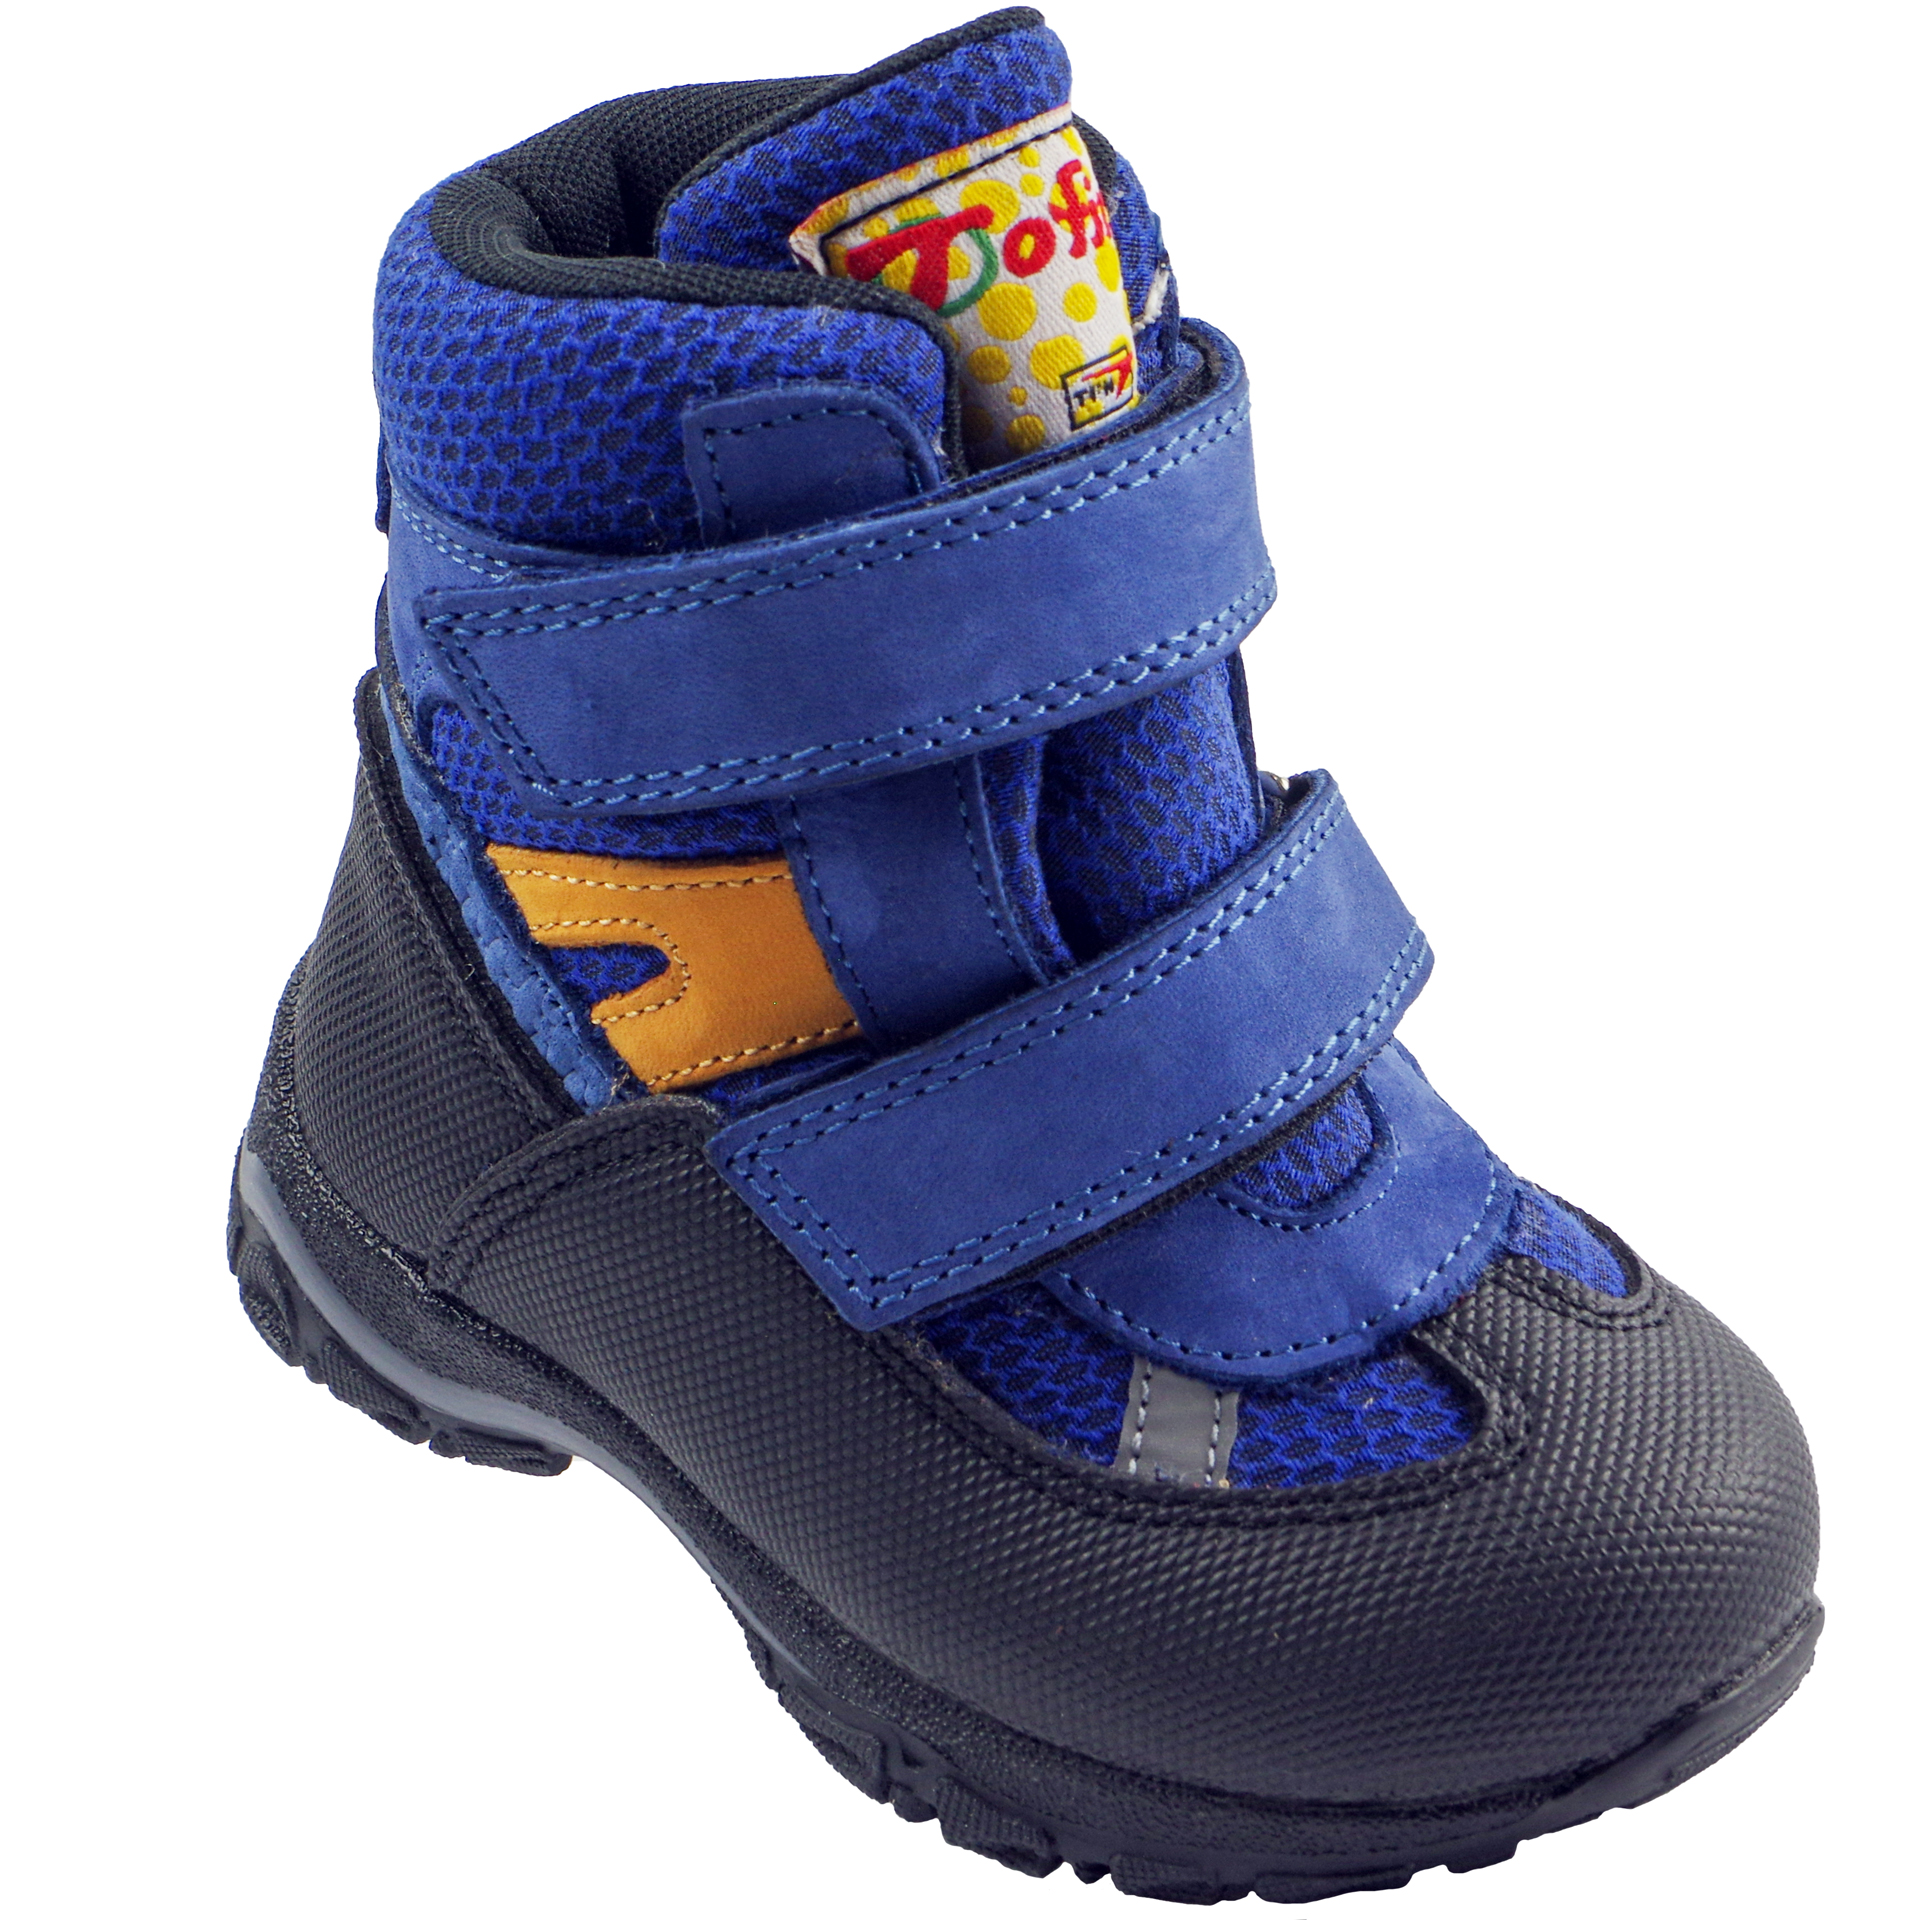 Зимние мембранные ботинки (2146) материал Мембрана, цвет Синий  для мальчиков 22-25 размеры – Sole Kids